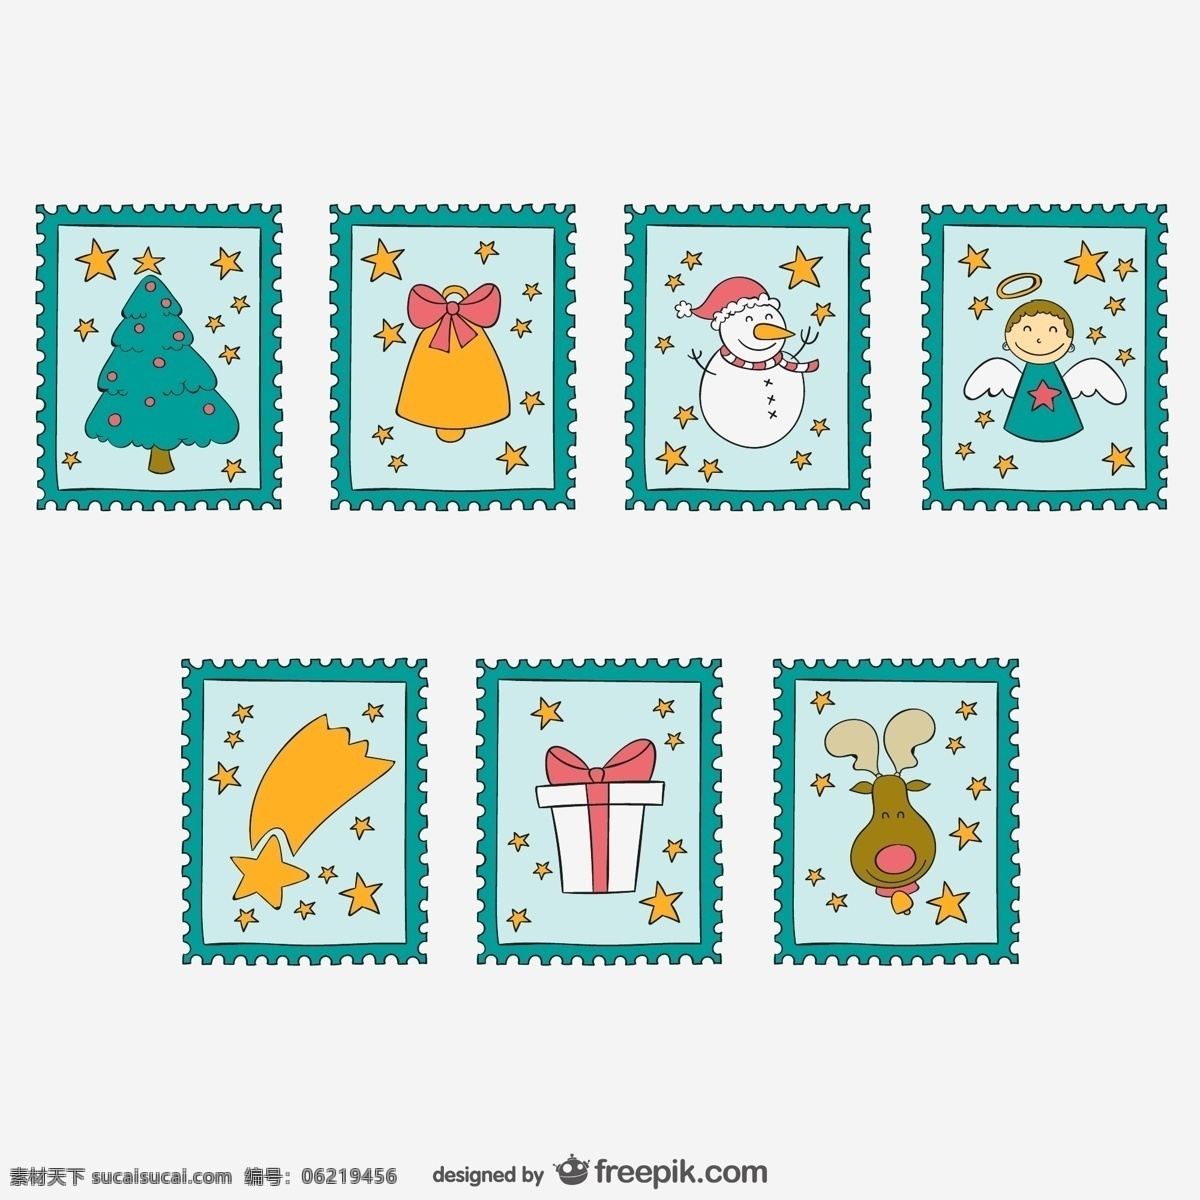 圣诞邮票收集 圣诞节 饰品 邮票 挂件 摆件 圣诞 装饰 装饰品 收藏